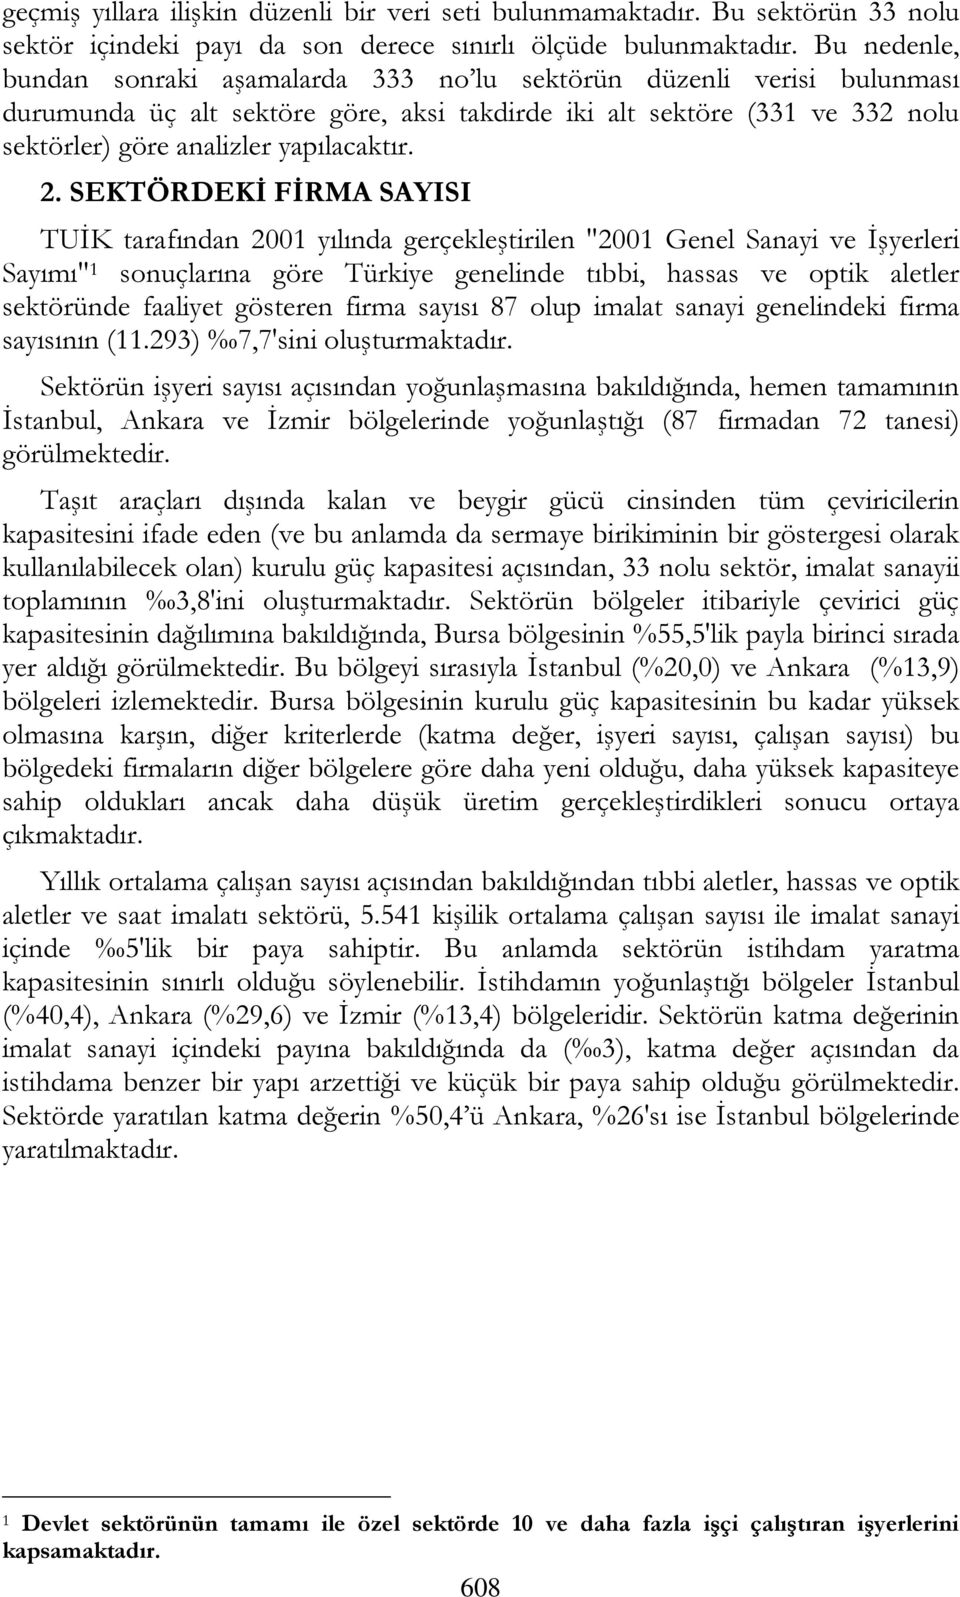 2. SEKTÖRDEKİ FİRMA SAYISI TUİK tarafından 2001 yılında gerçekleştirilen "2001 Genel Sanayi ve İşyerleri Sayımı" 1 sonuçlarına göre Türkiye genelinde tıbbi, hassas ve optik aletler sektöründe